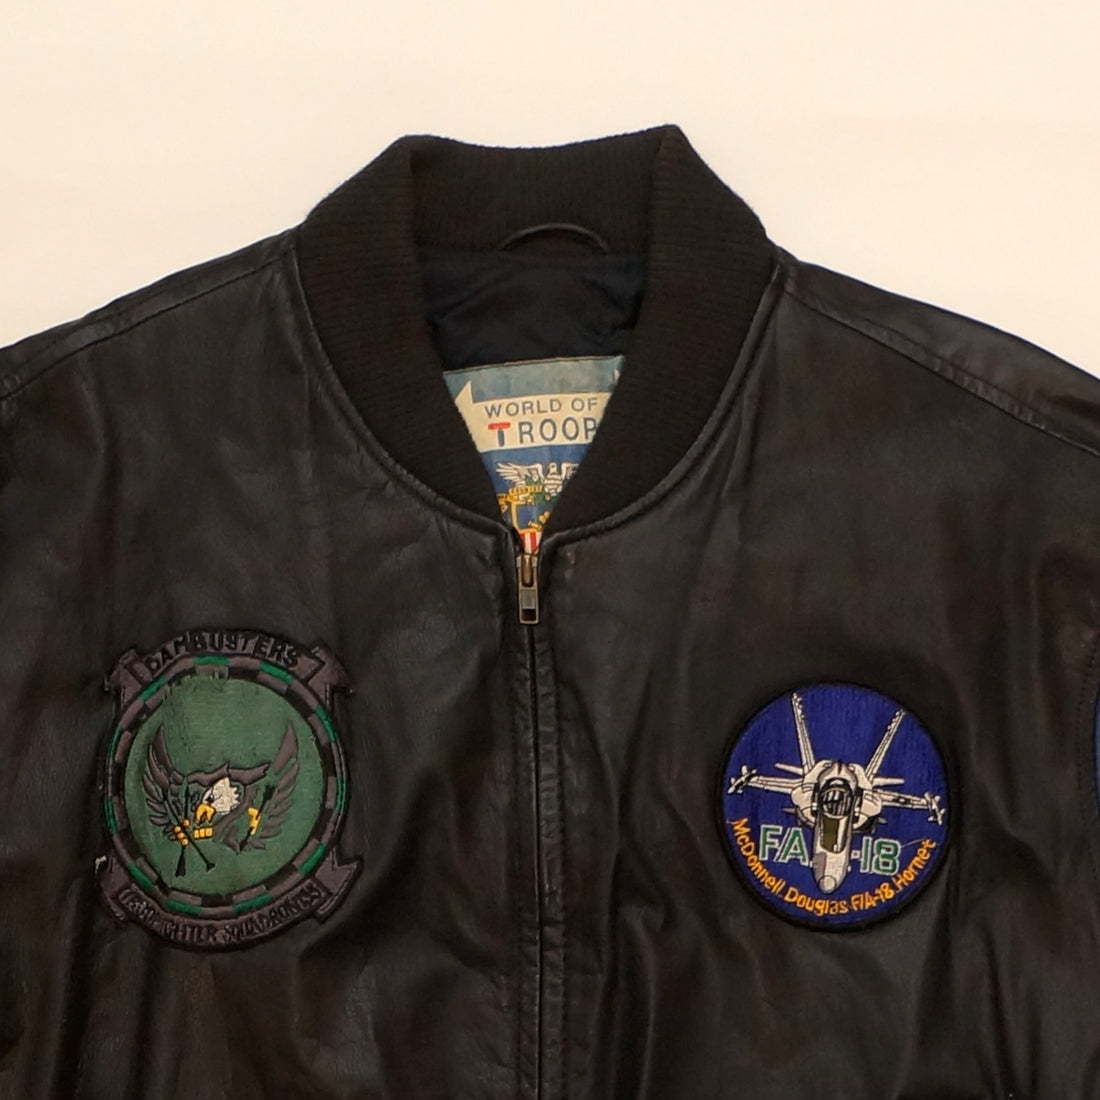 Vintage Leather "TROOP CLUB" Troop Jacket